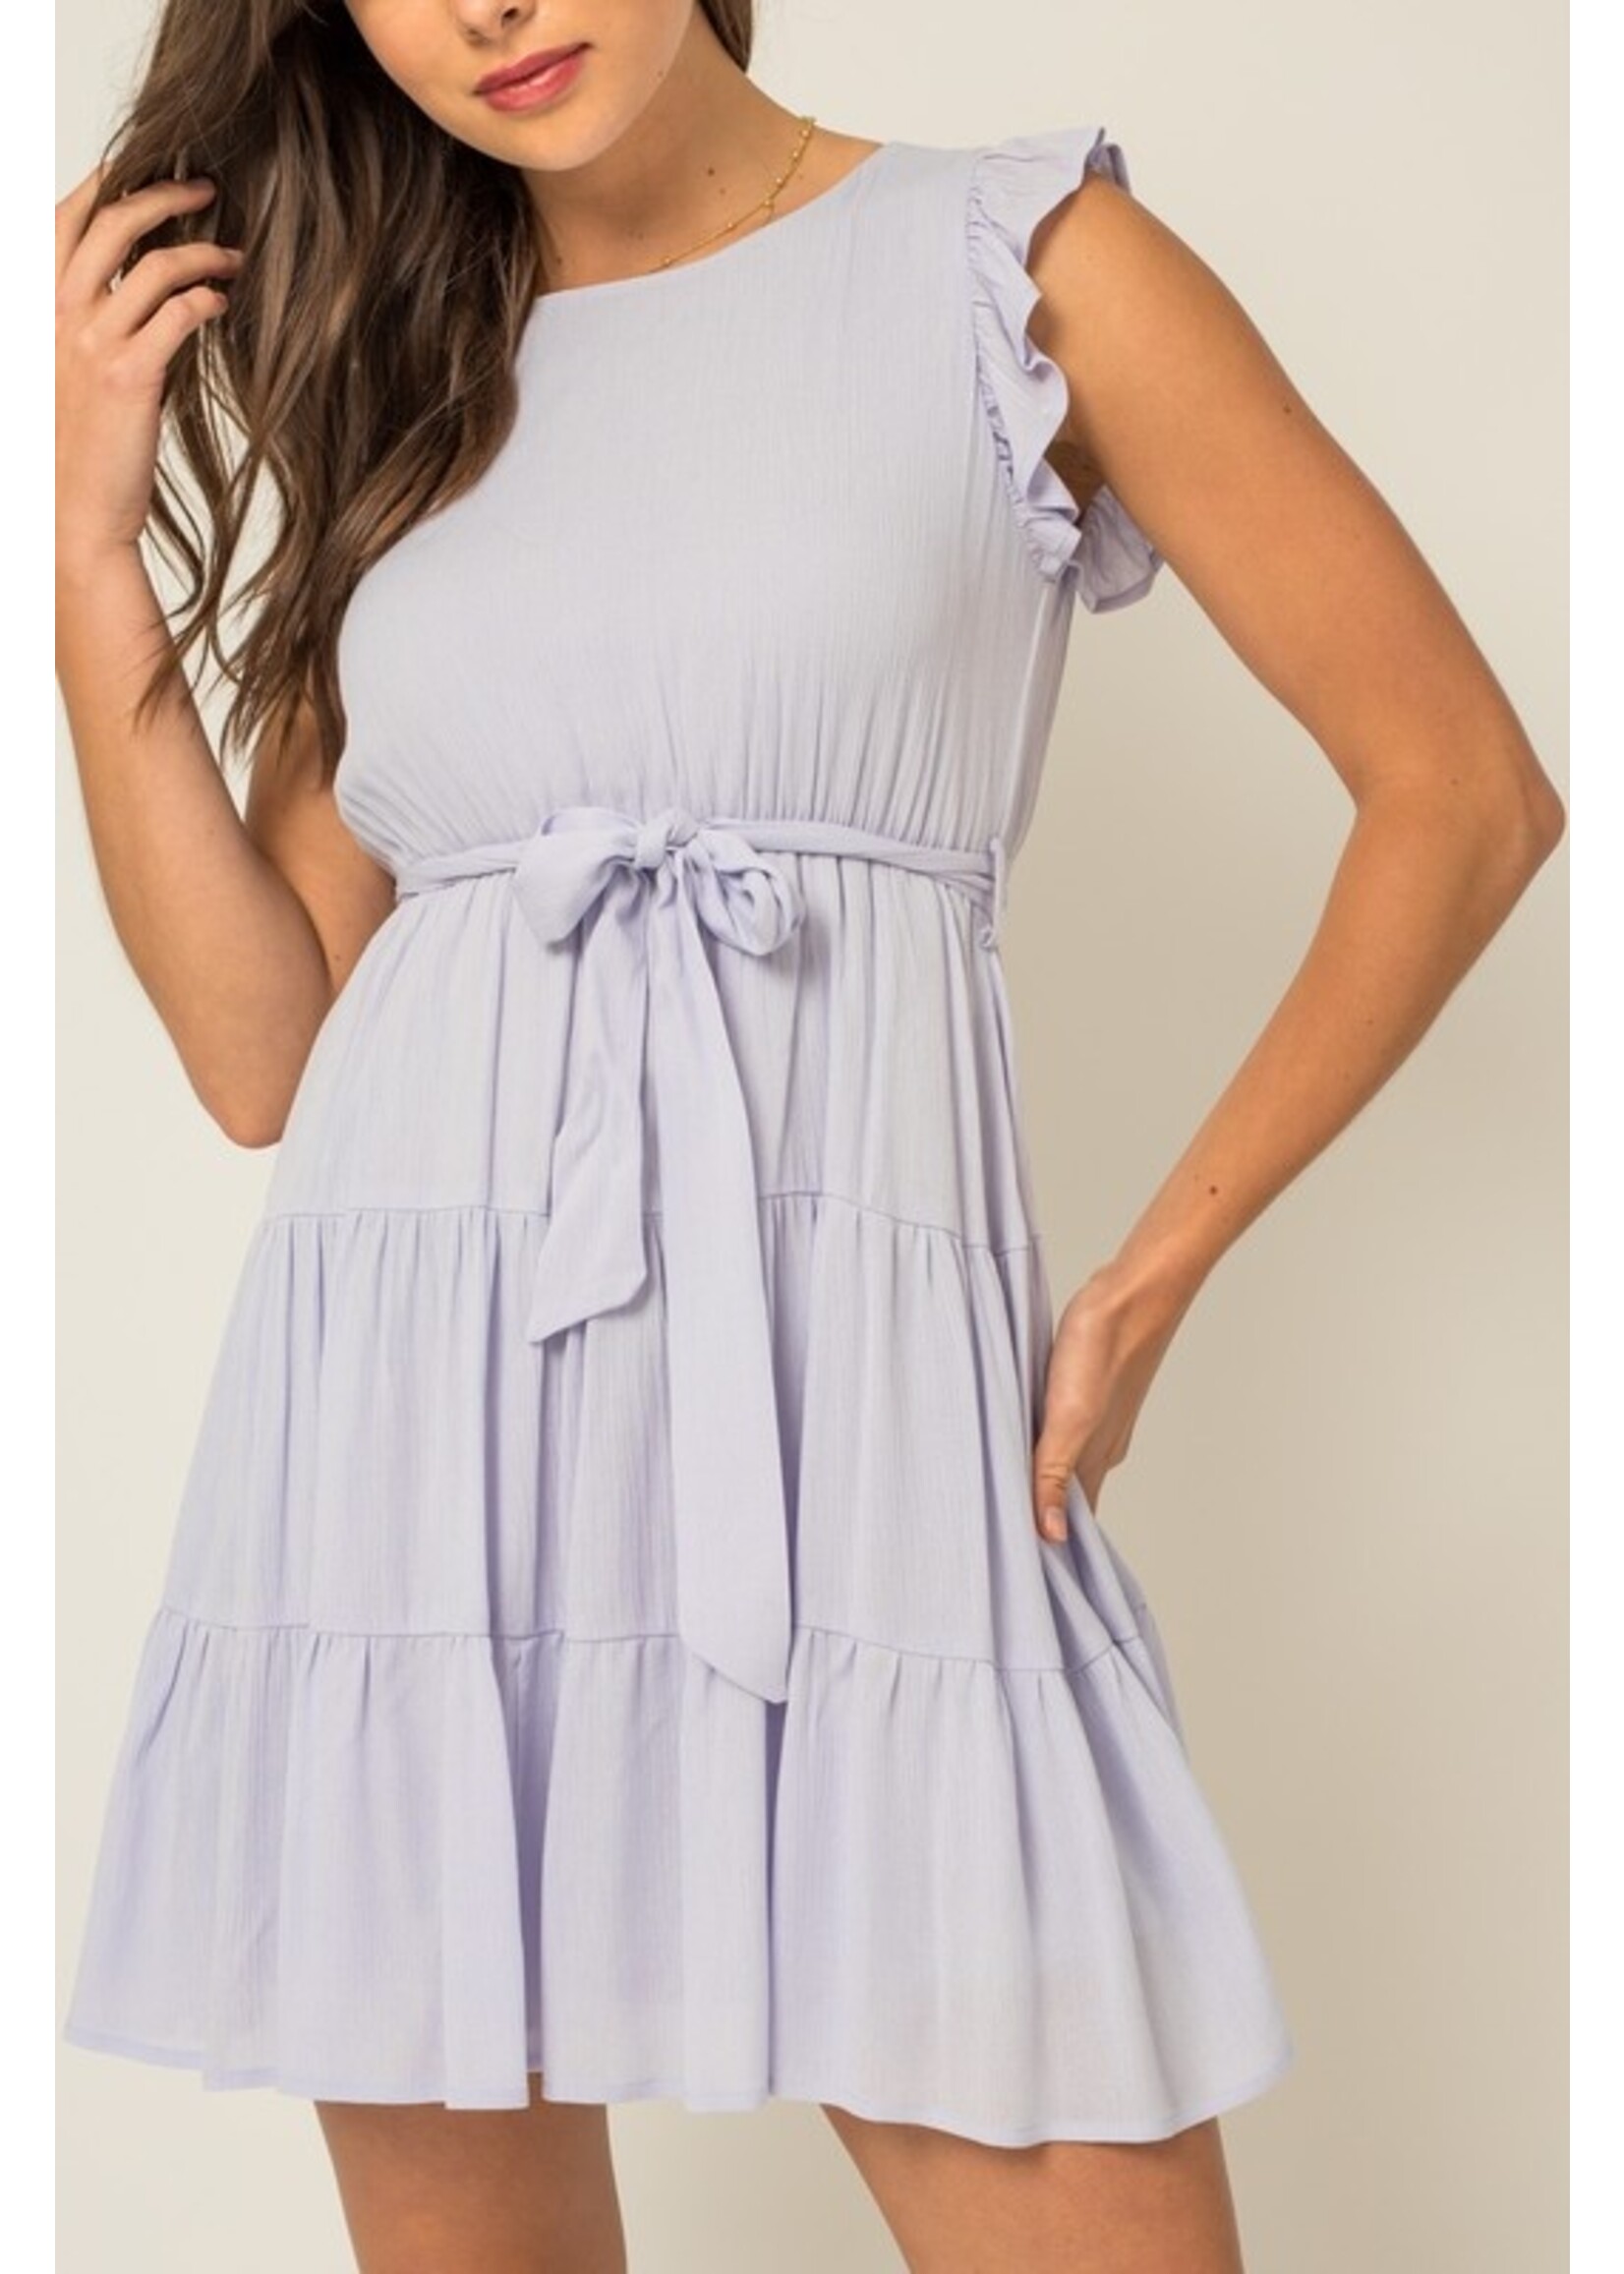 Short Ruffle Sleeve Mini Dress w/ Tie Belt Lilac